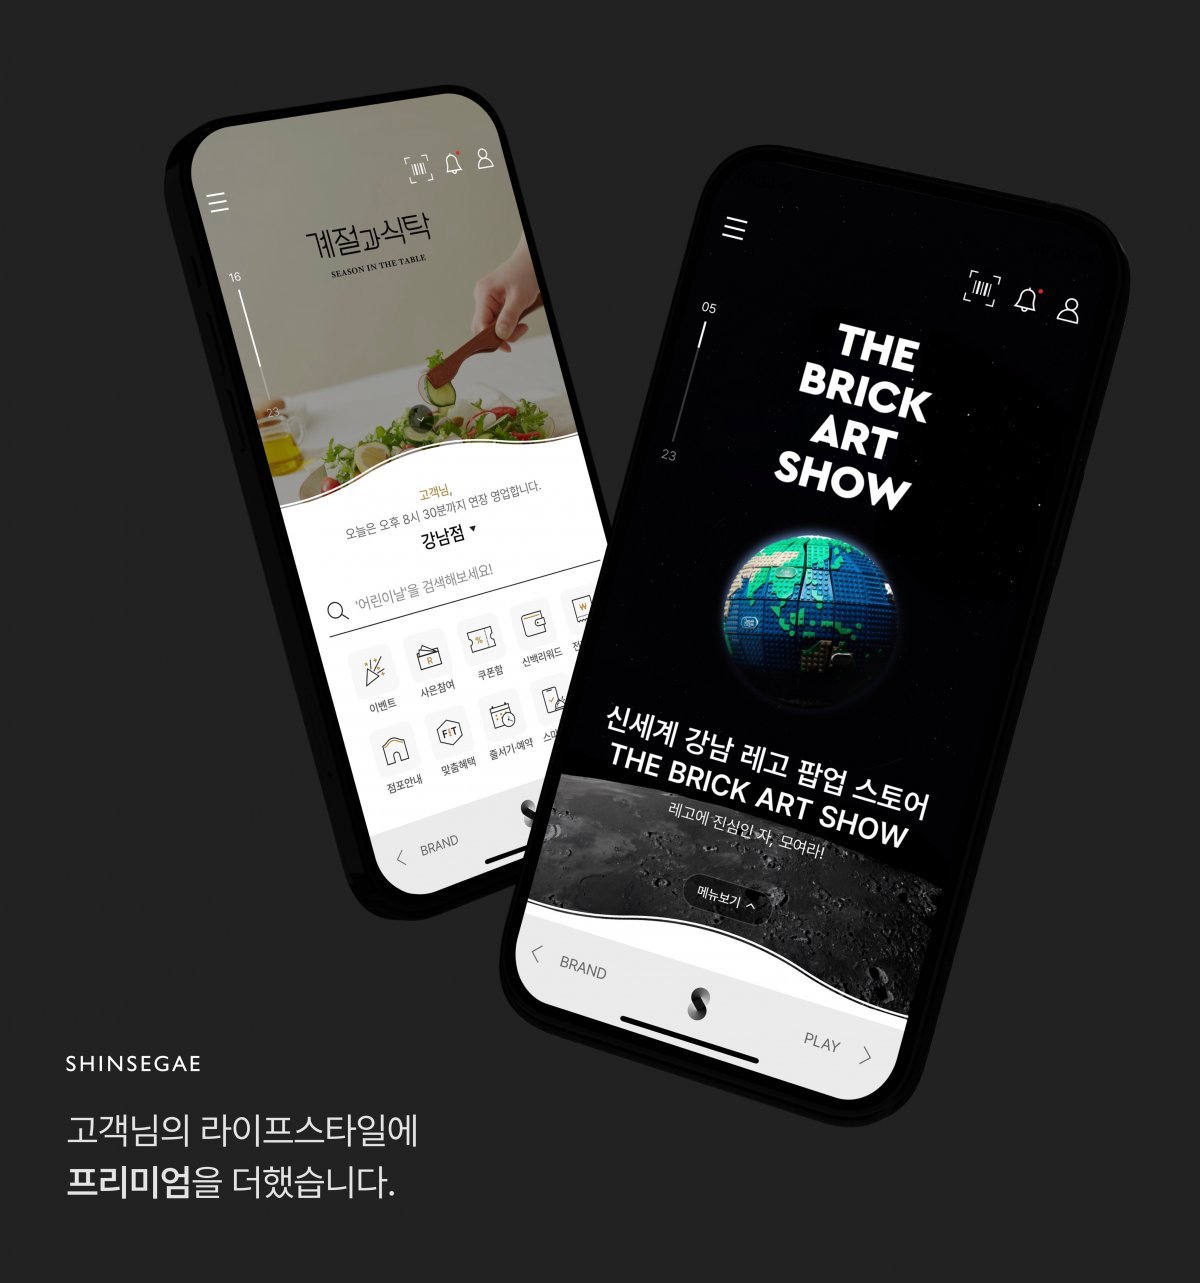 신세계백화점 앱은 쇼핑에 라이프스타일을 접목한 플랫폼으로 변화했다.